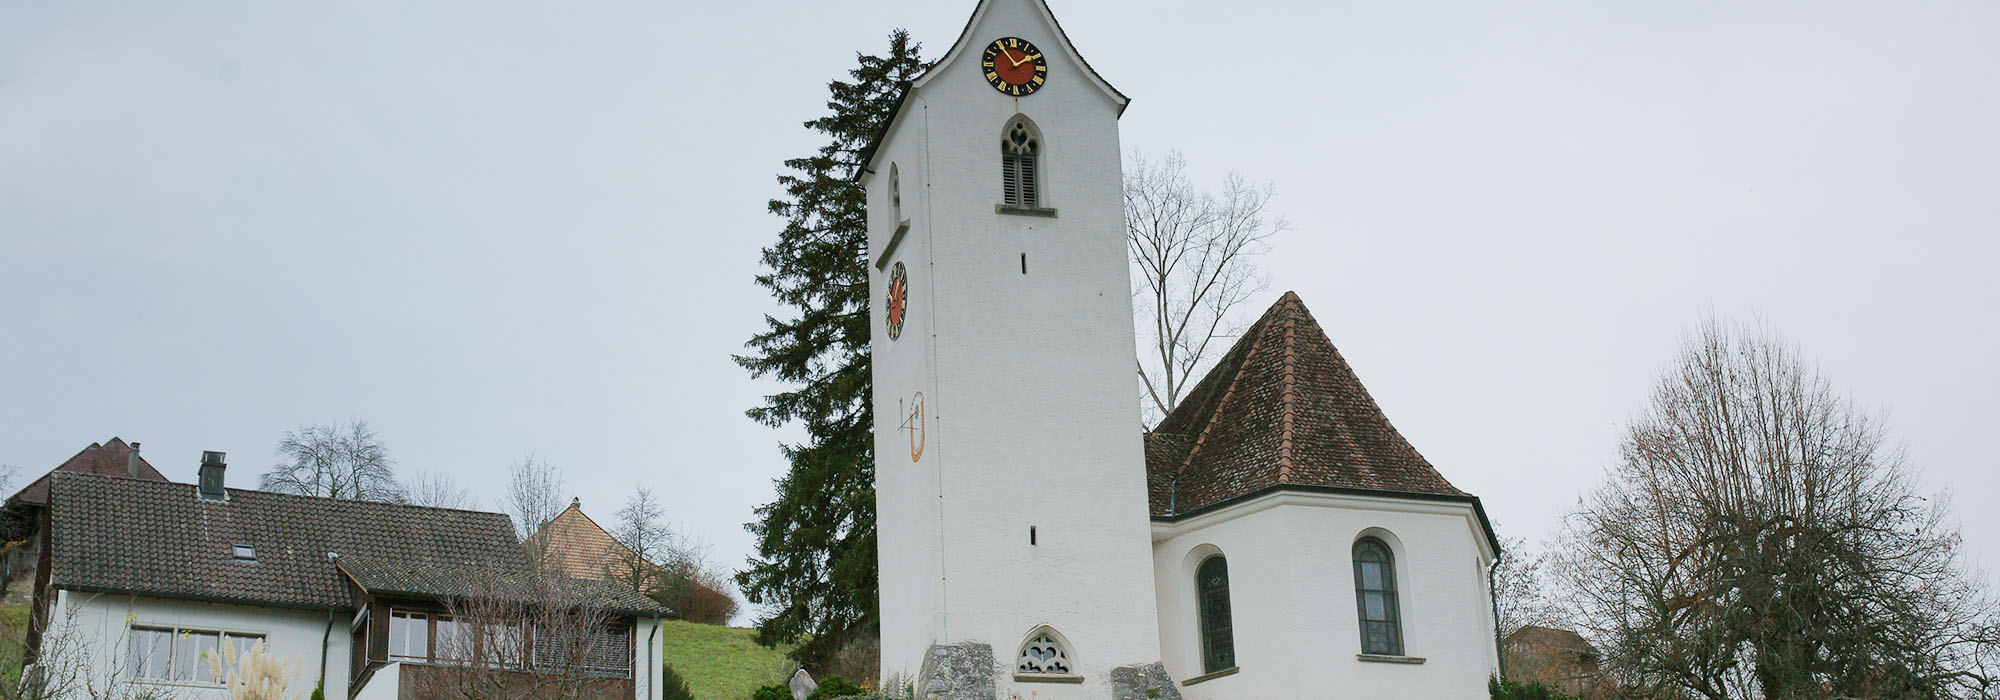 Reformierte Kirche Birrwil Aussenansicht